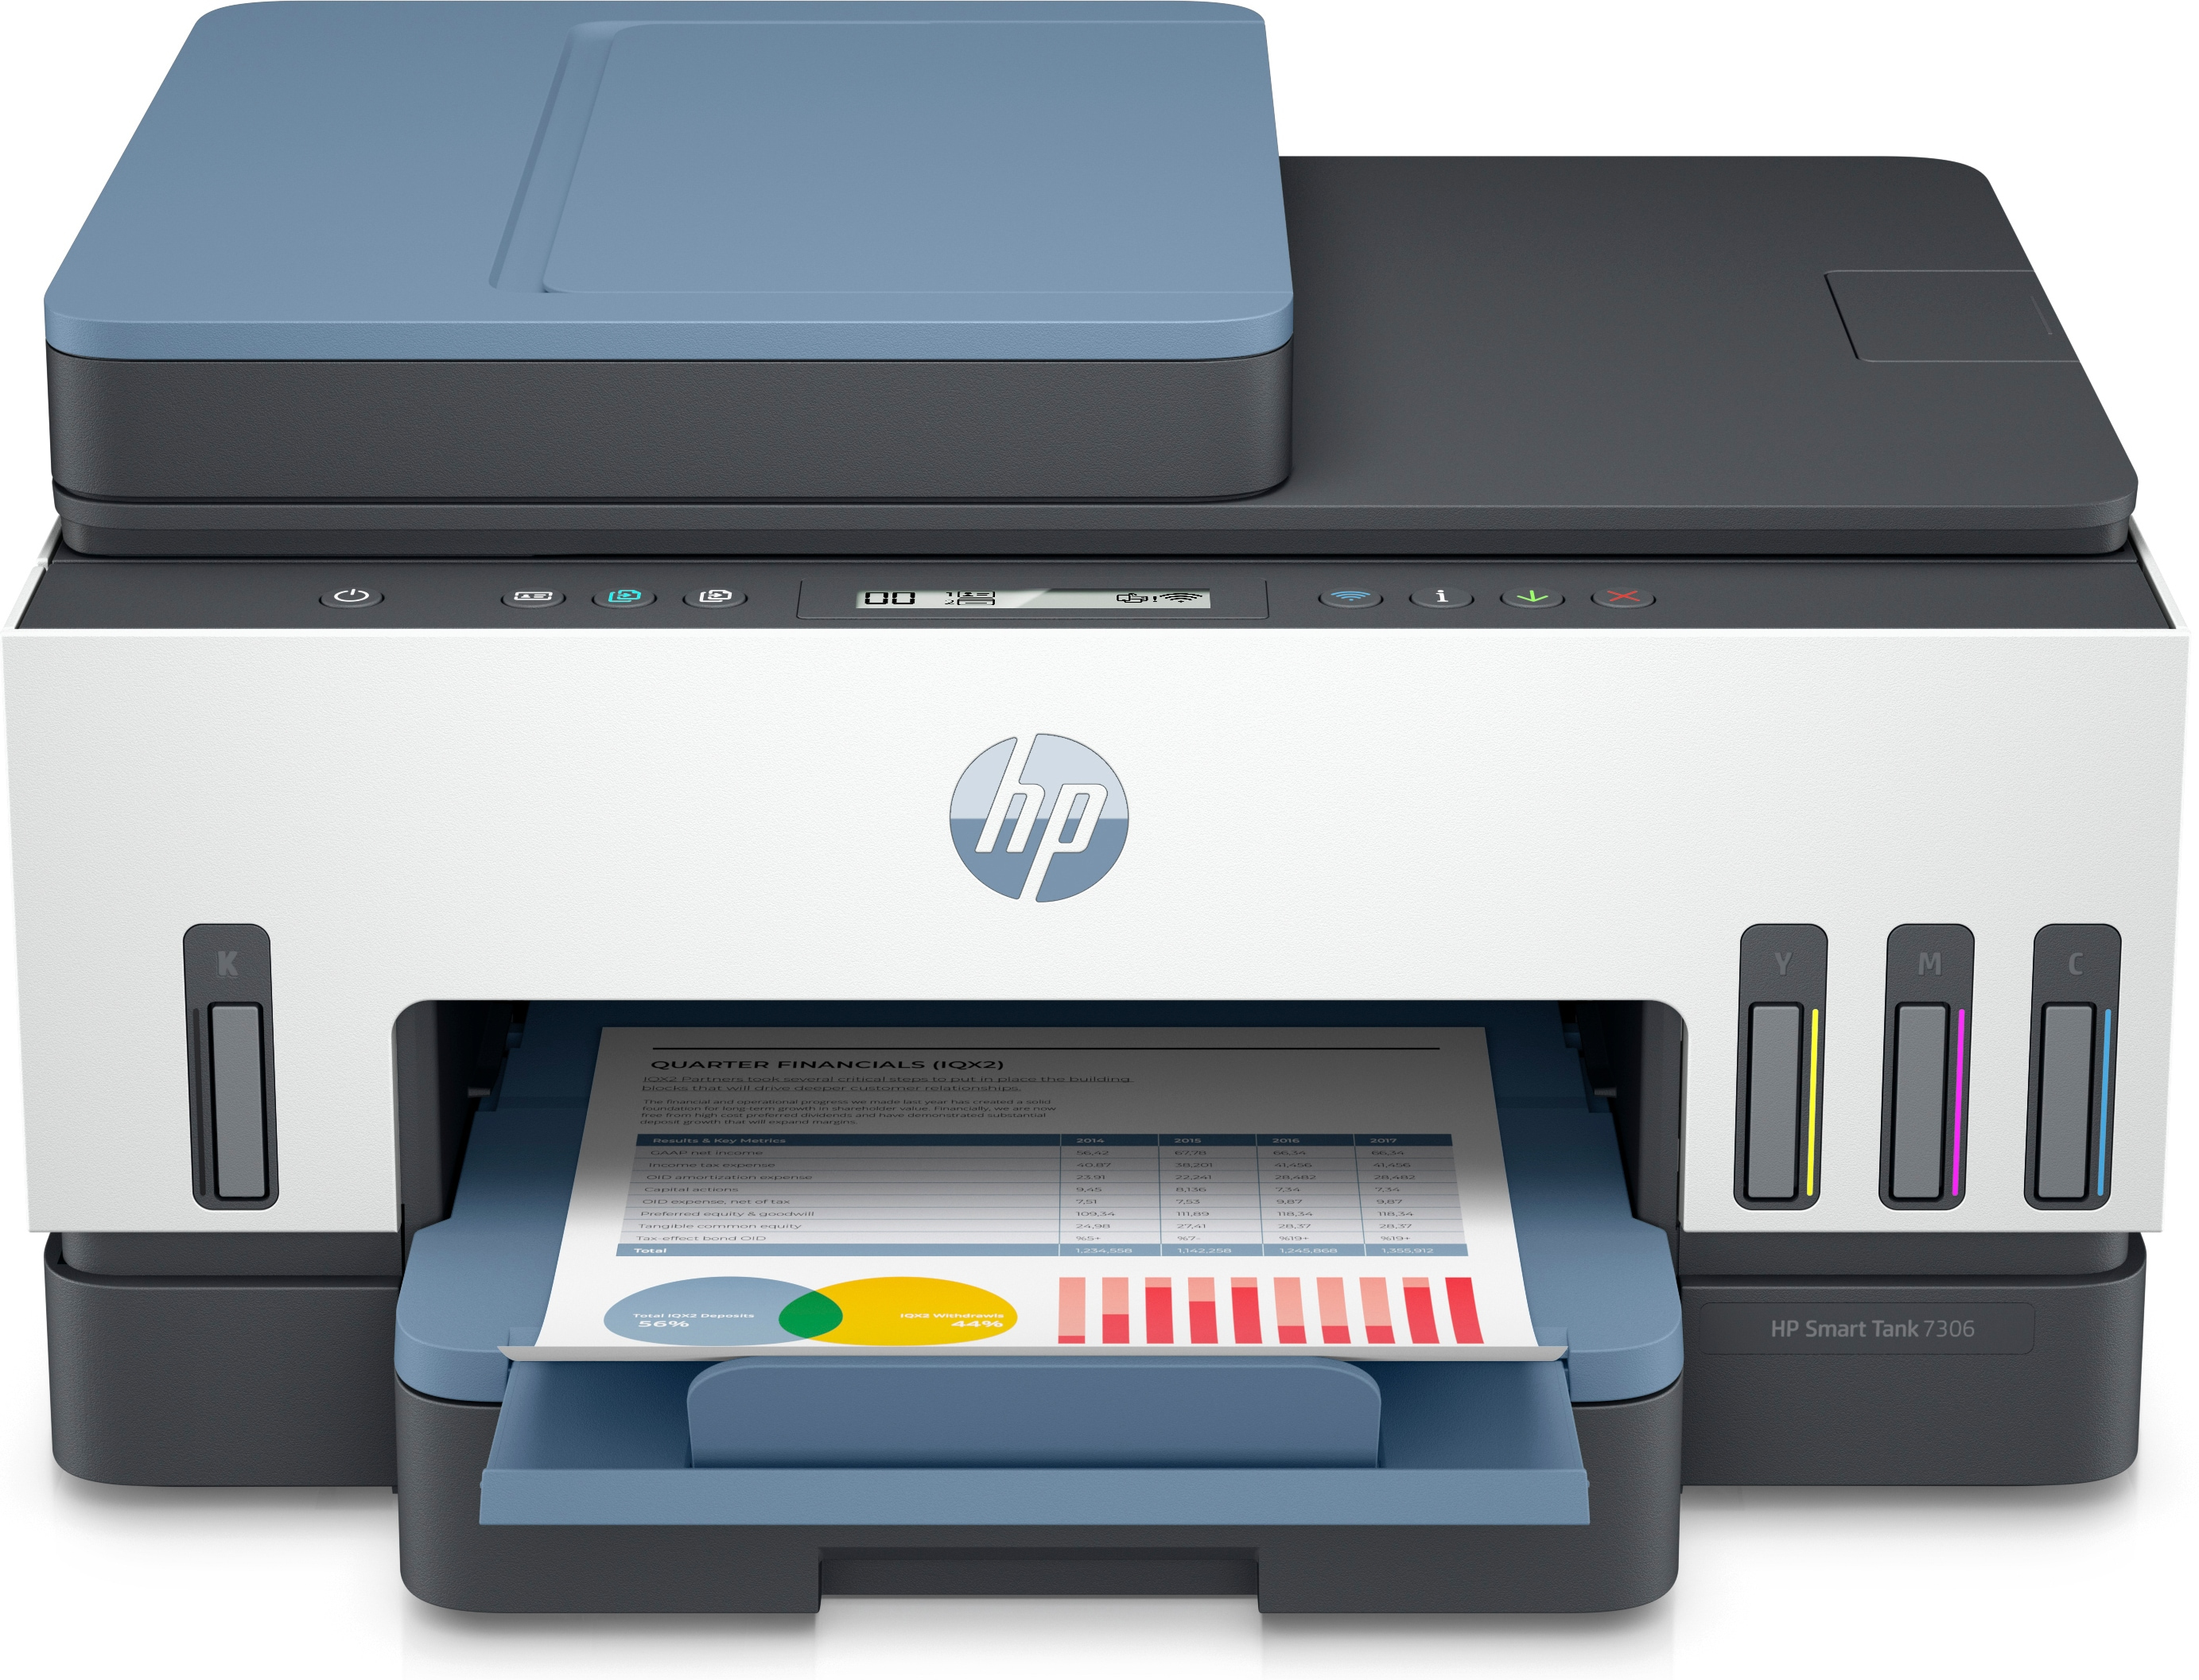 HP HP Smart Tank 7306 All-in-One, Kleur, Printer voor Thuis en thuiskantoor, Printen, scannen, kopi&#235;ren, automatische documentinvoer, draadloos, Invoer voor 35 vel; Scans naar pdf; Dubbelzijdig printen